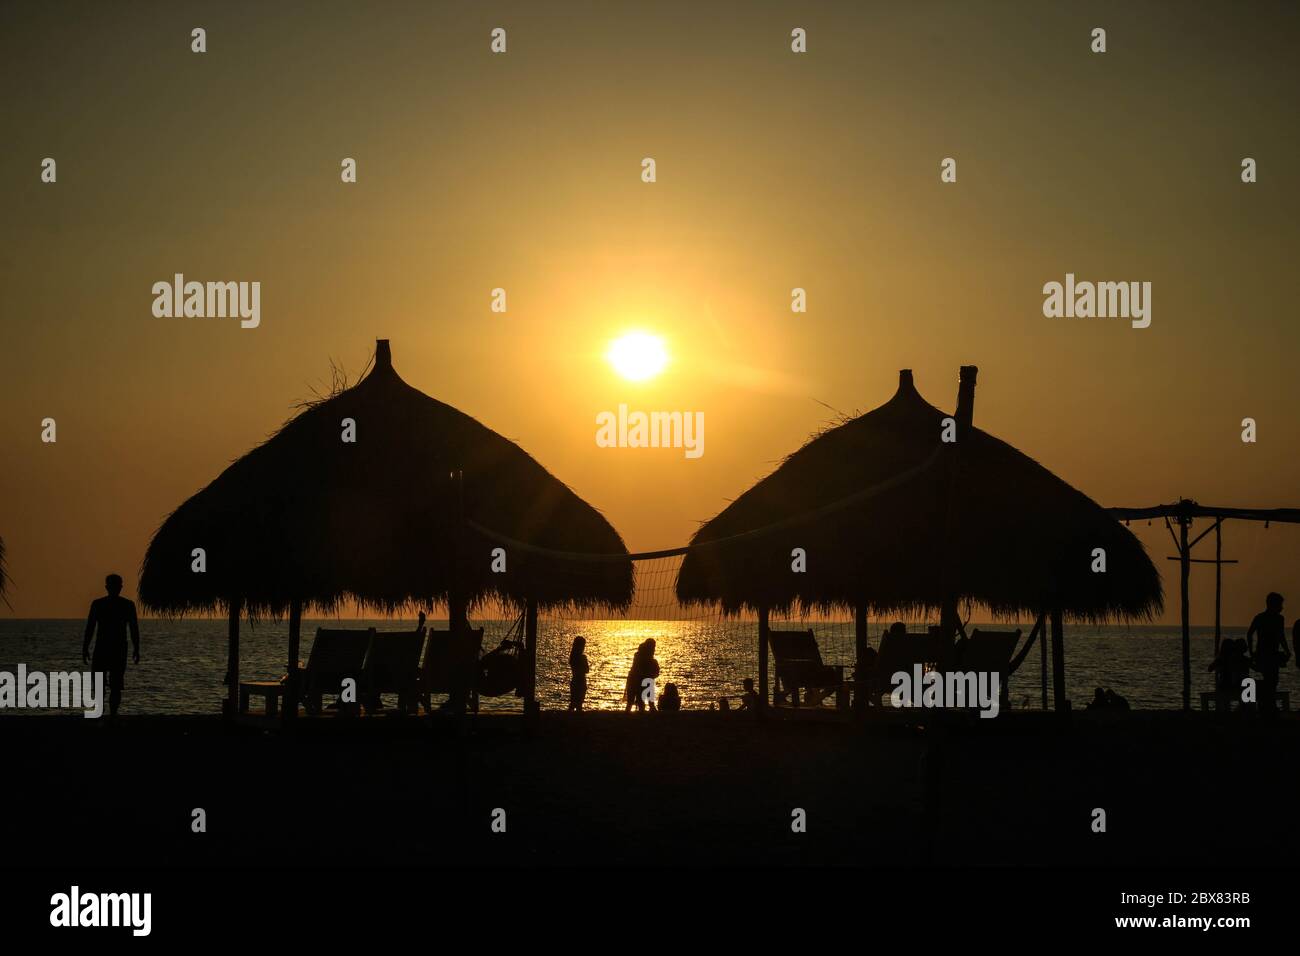 Una vista de la puesta de sol a lo largo de la costa, cabañas, y la gente que disfruta de la vista majestuosa mientras el sol se pone a través del horizonte Foto de stock